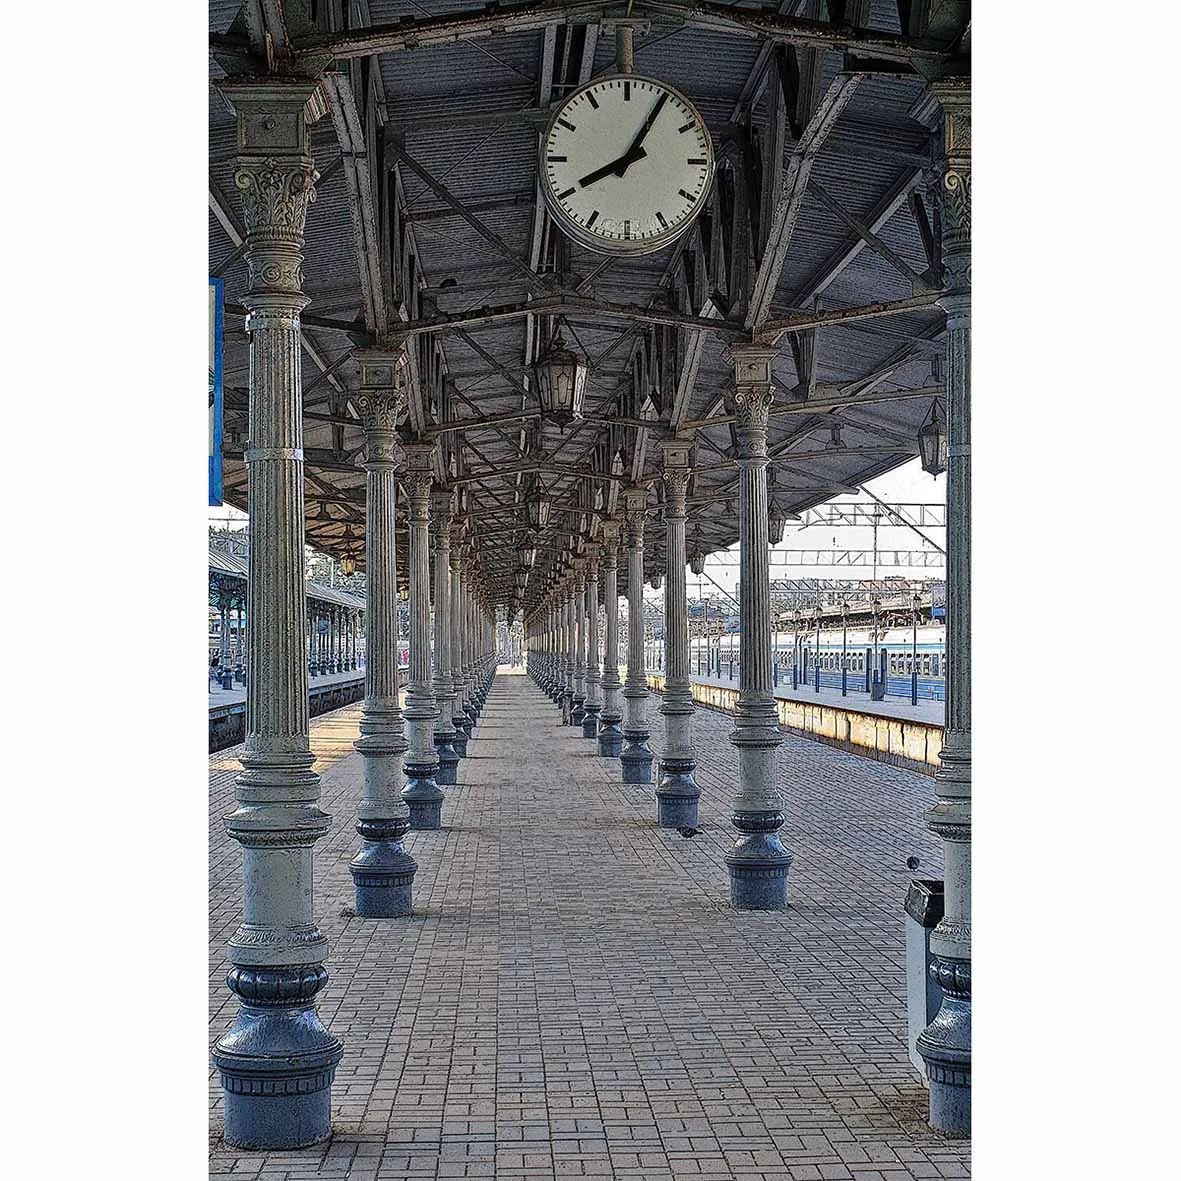 Фон для фотосъемки Allenjoy платформа часы кирпичный пол колонны фоны